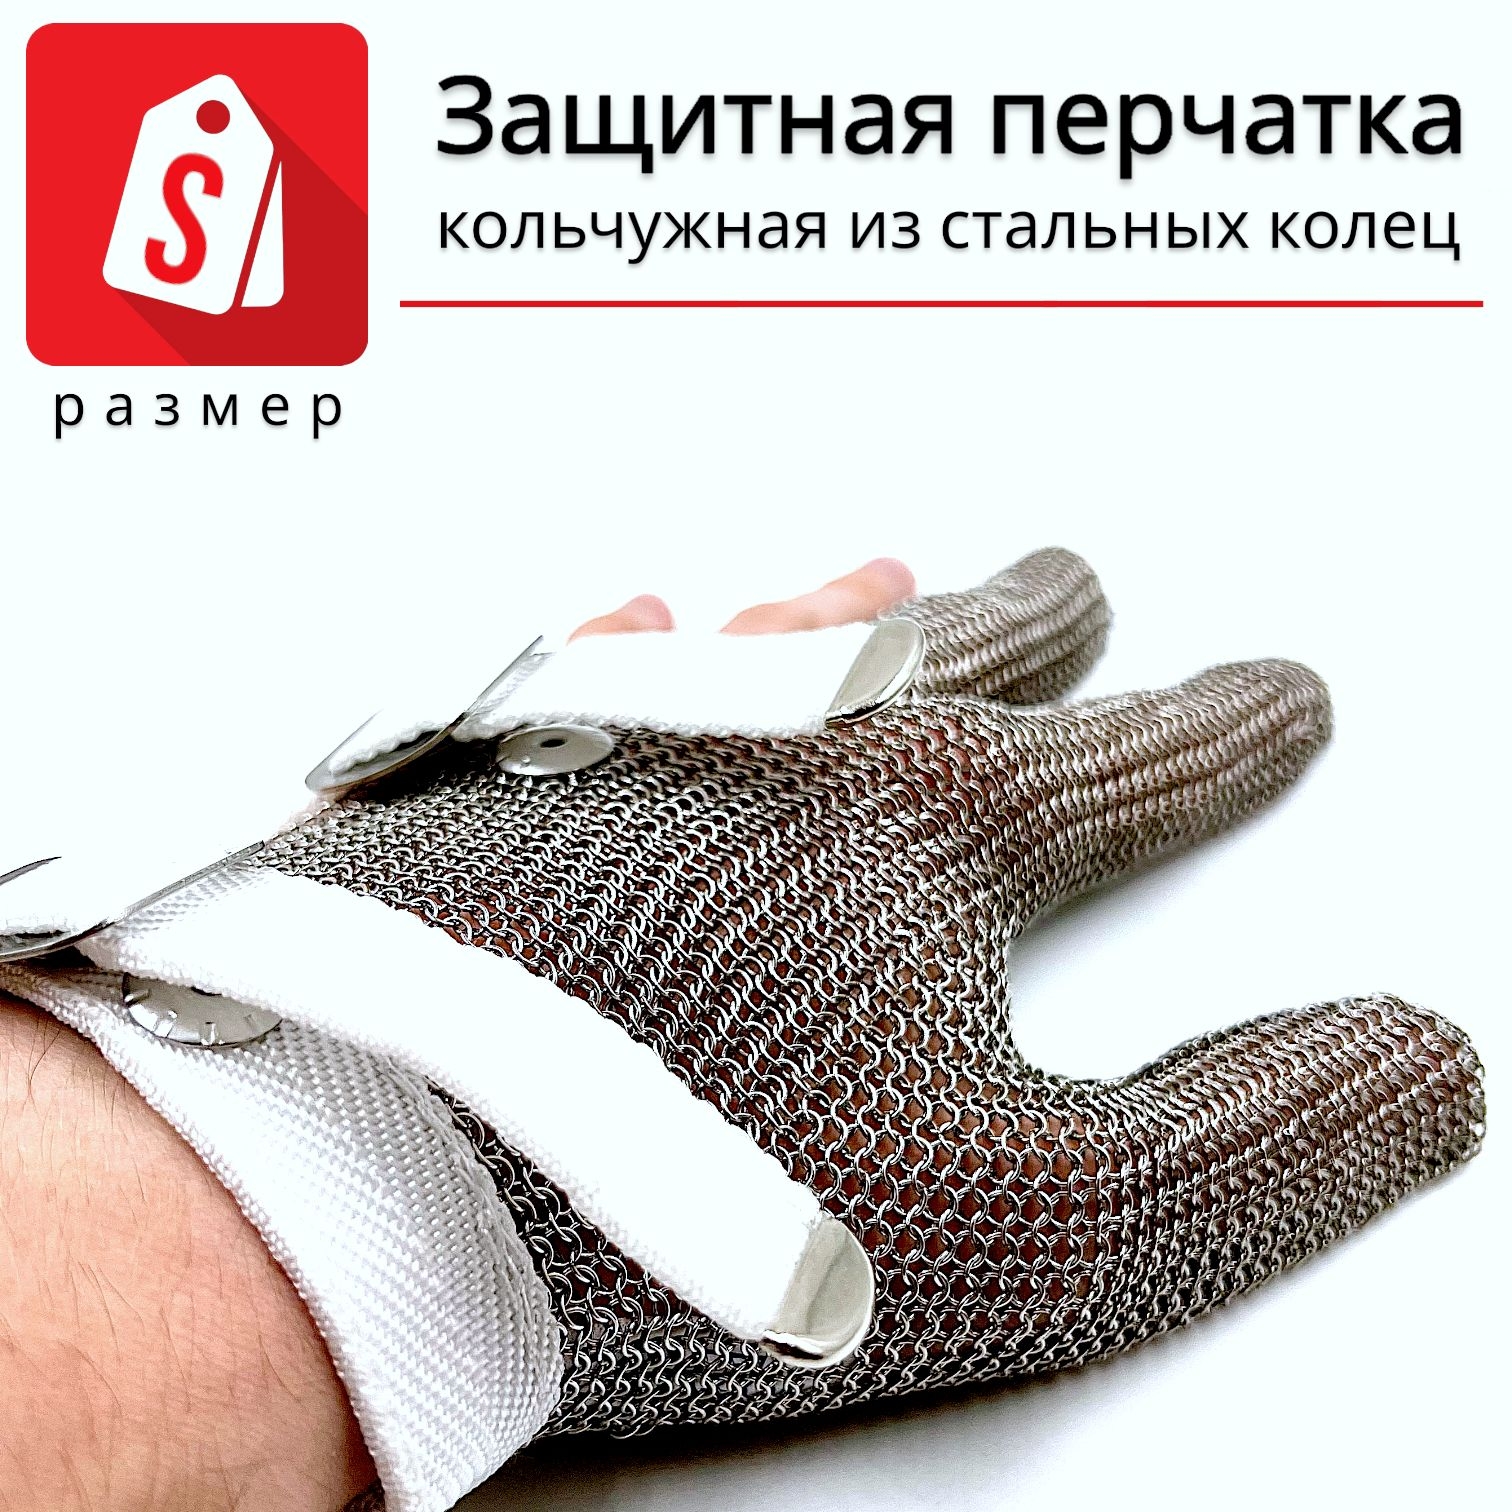 Трехпалая кольчужная перчатка (размер S) перчатка титана